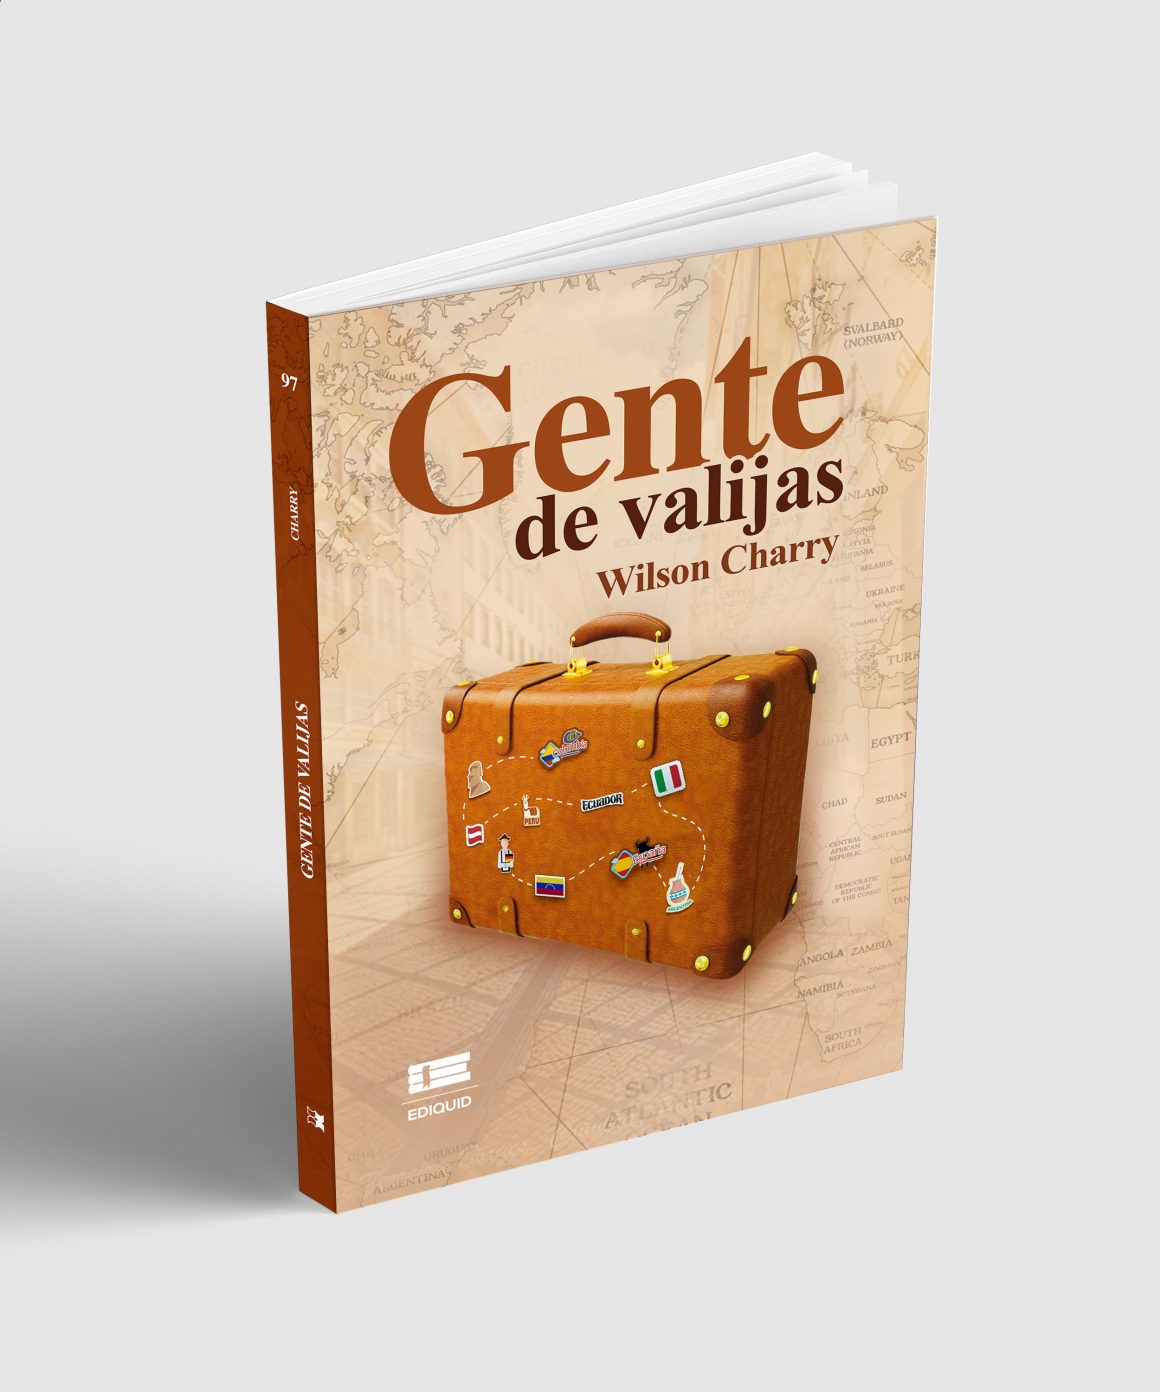 Periodista colombochileno presenta su primera novela “Gente de Valijas”